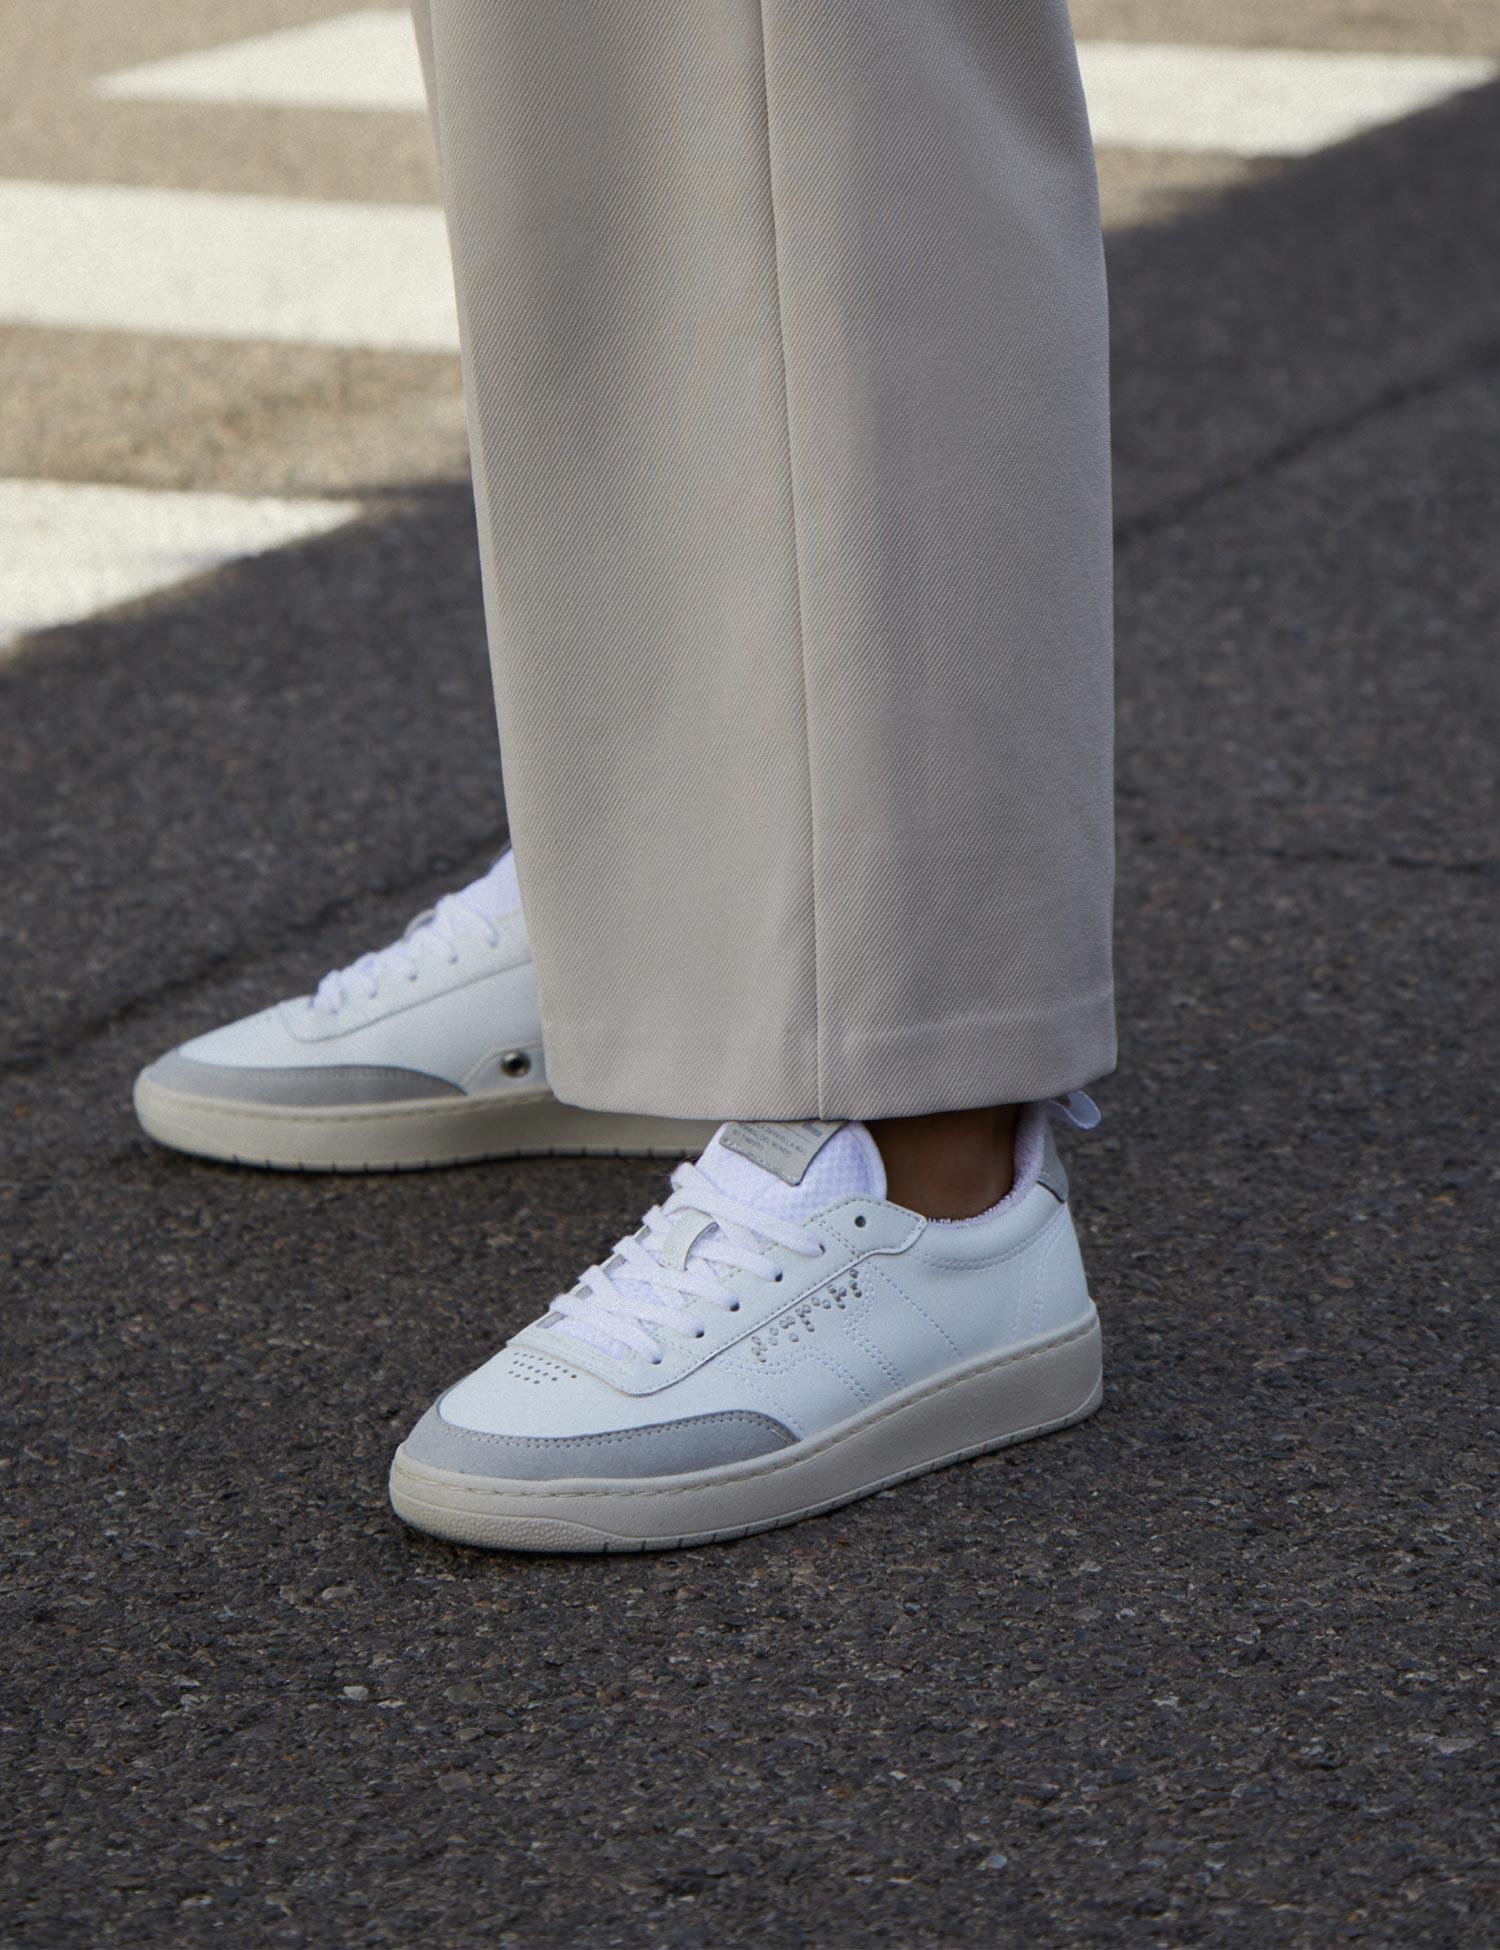 Zapatilla blanca con suela un tono color crema con puntera y trasera gris. Son zapatillas unisex.